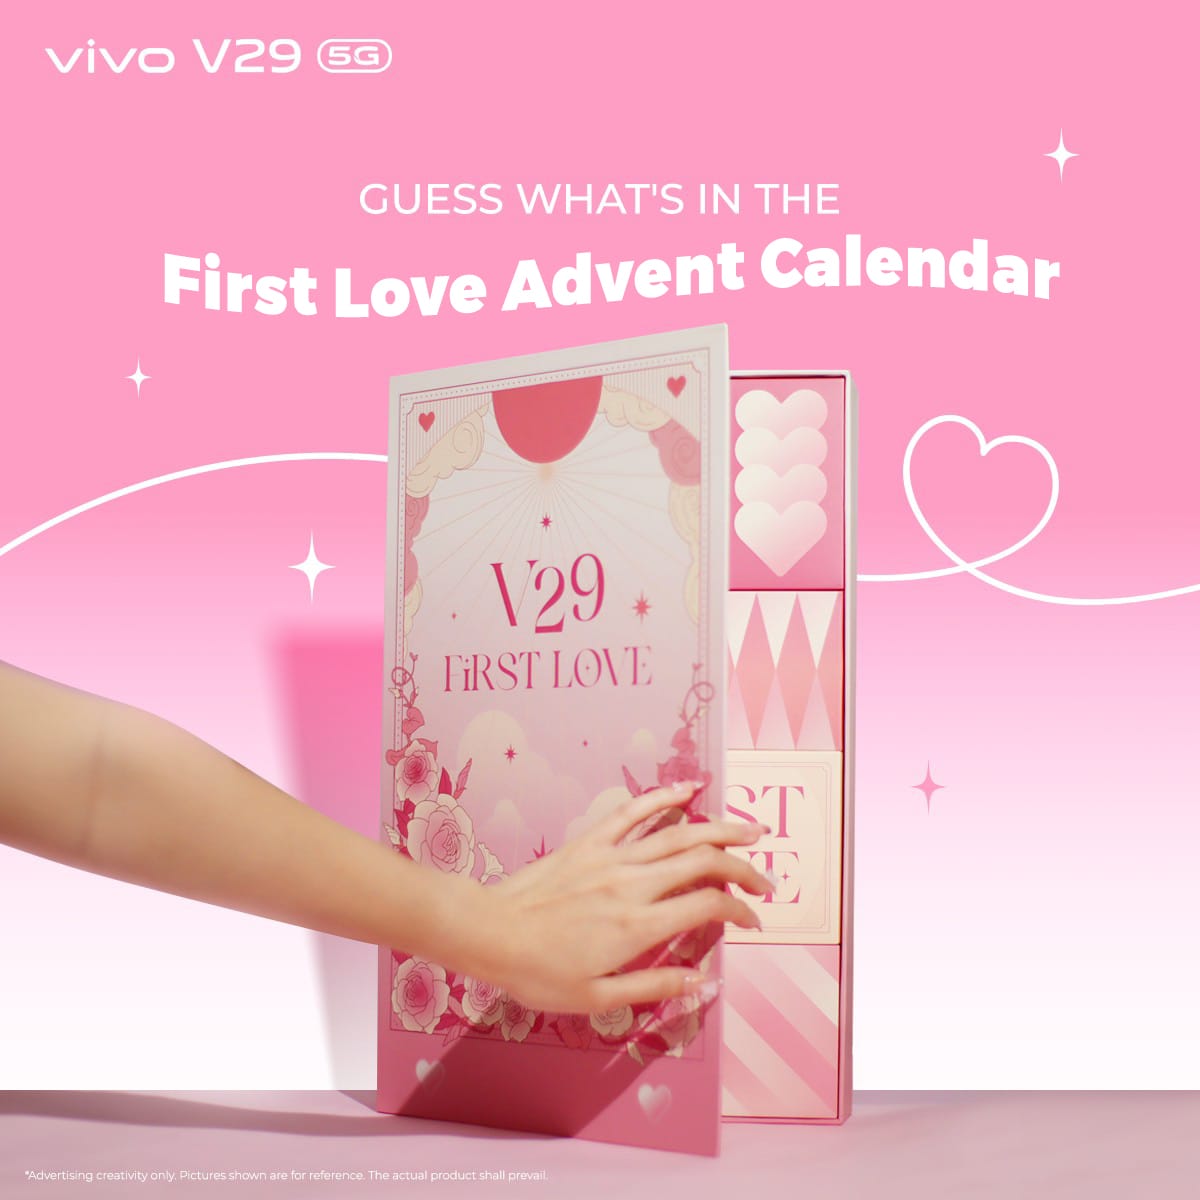 VIVO V29 5G FIRST LOVE ADVENT CALENDAR